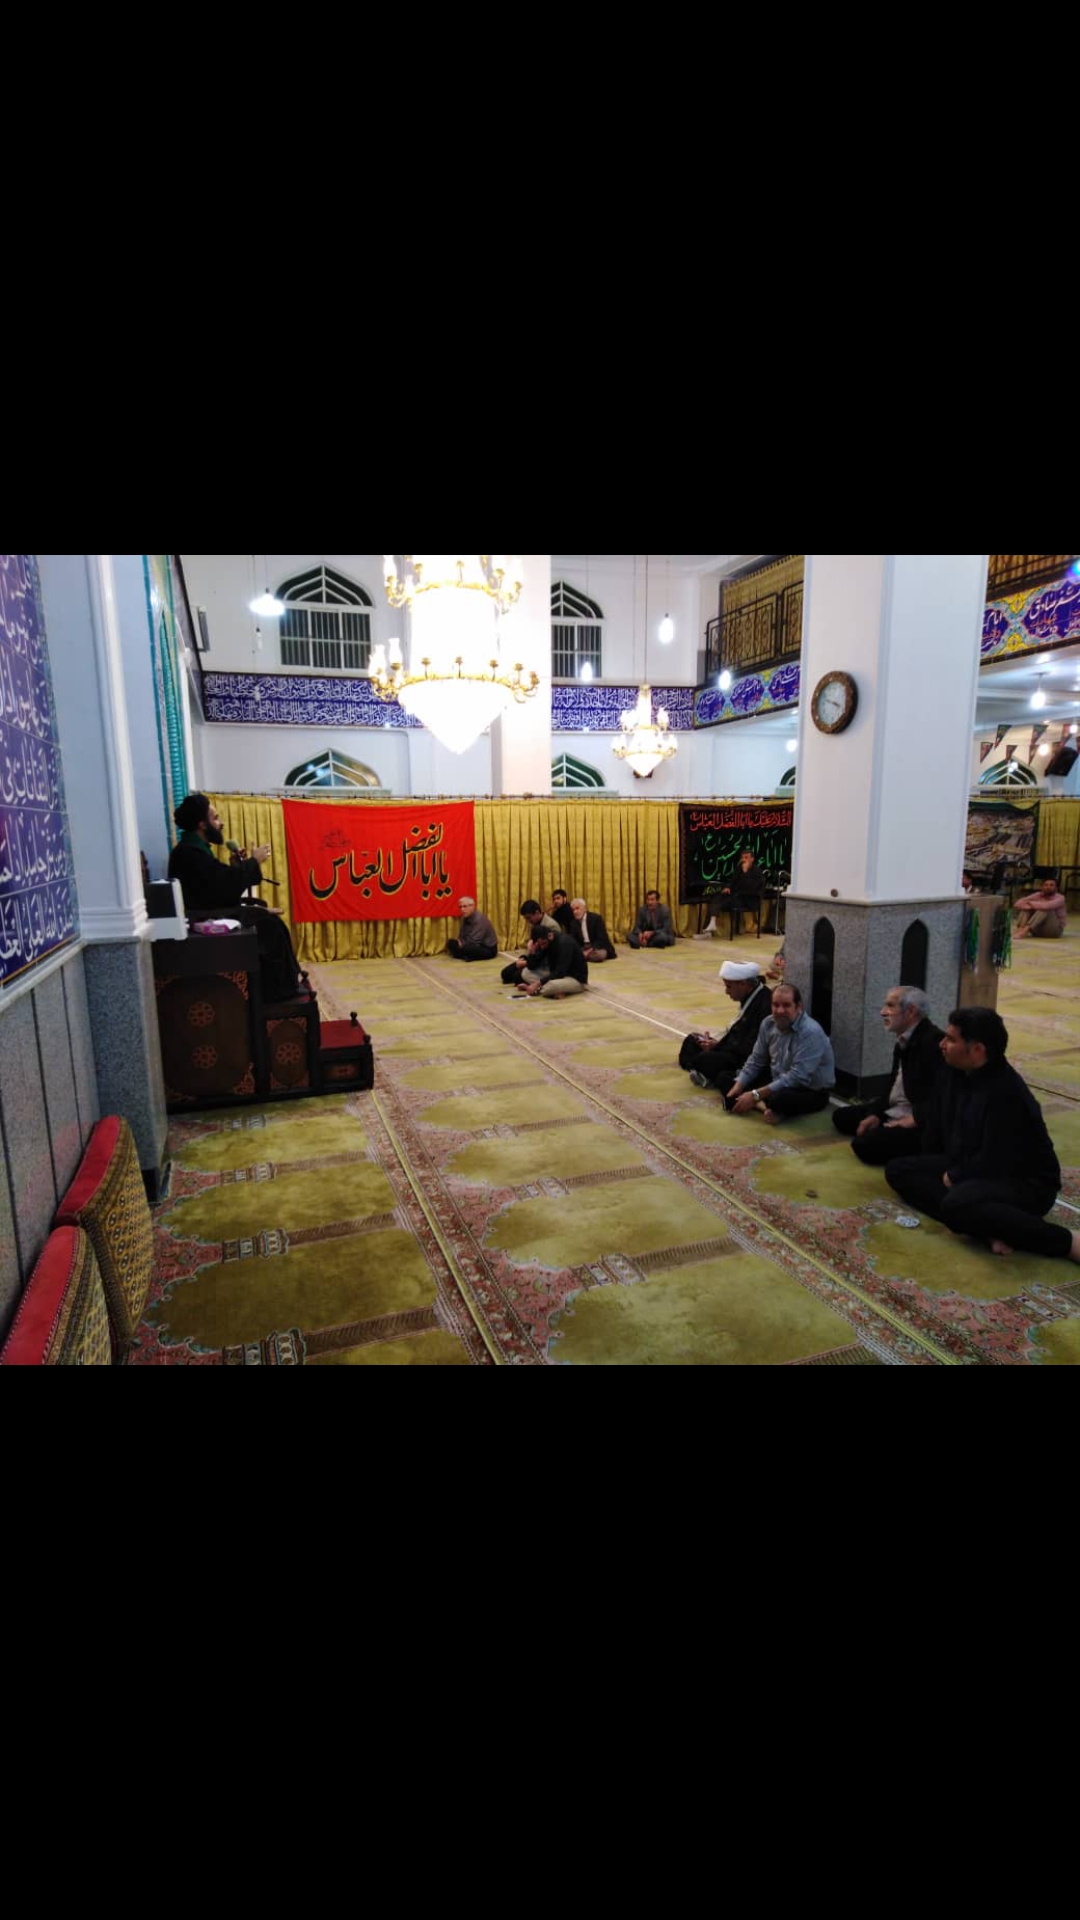 برگزاری جلسه ی استغاثه با امام زمان با حضور حجت الاسلام موسوی از قم در مسجد مهدی موعود(عج) بندرعباسم